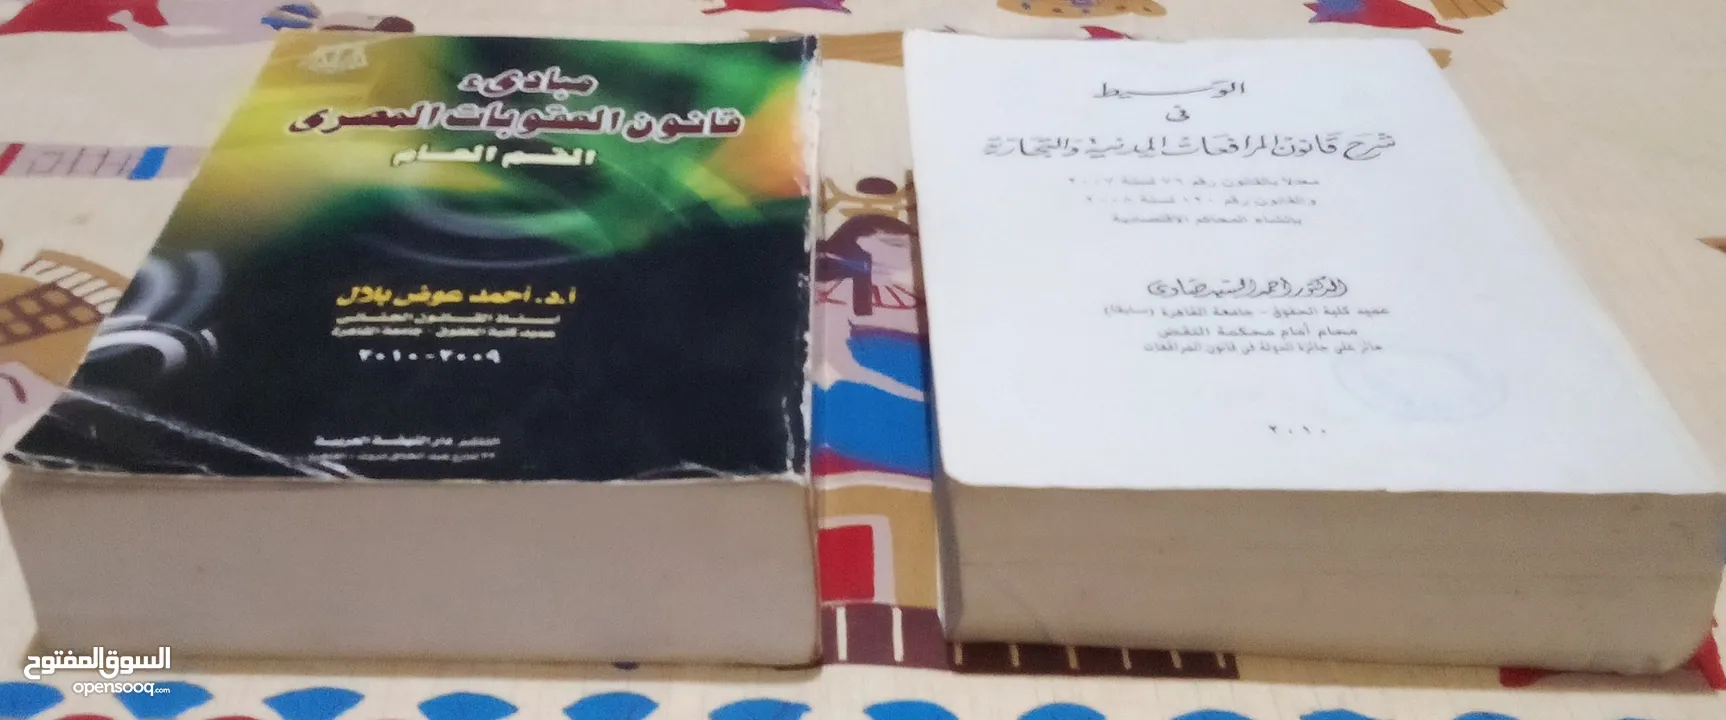 كتاب قانون العقوبات المصري وكتاب الوسيط في شرح قانون المرافعات المدنية والتجارية